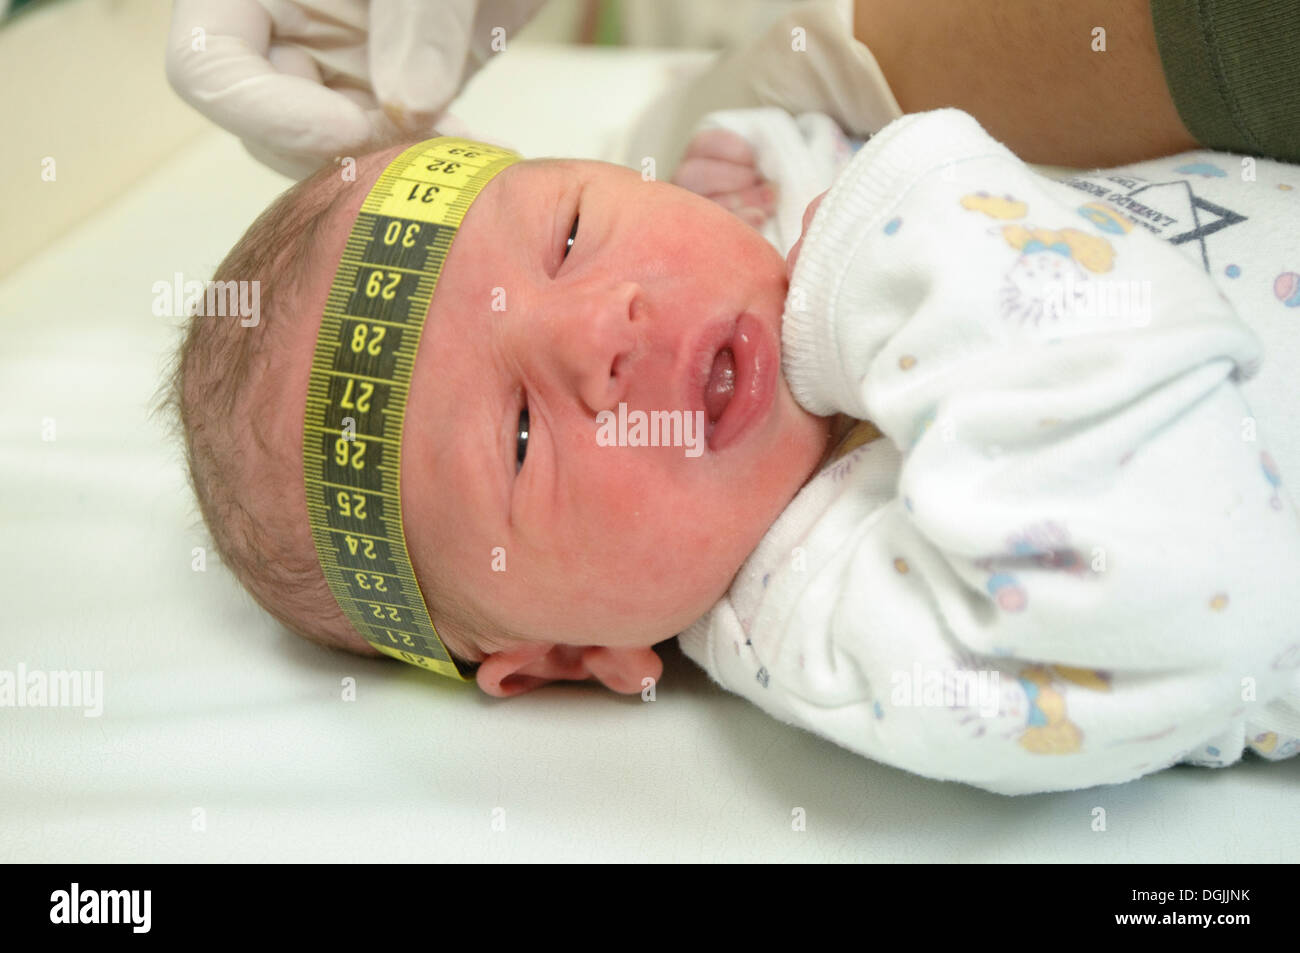 Der Kopf eines einen Tag alt Babyjungen wird gemessen mit einem Maßband - Model-Release verfügbar Stockfoto